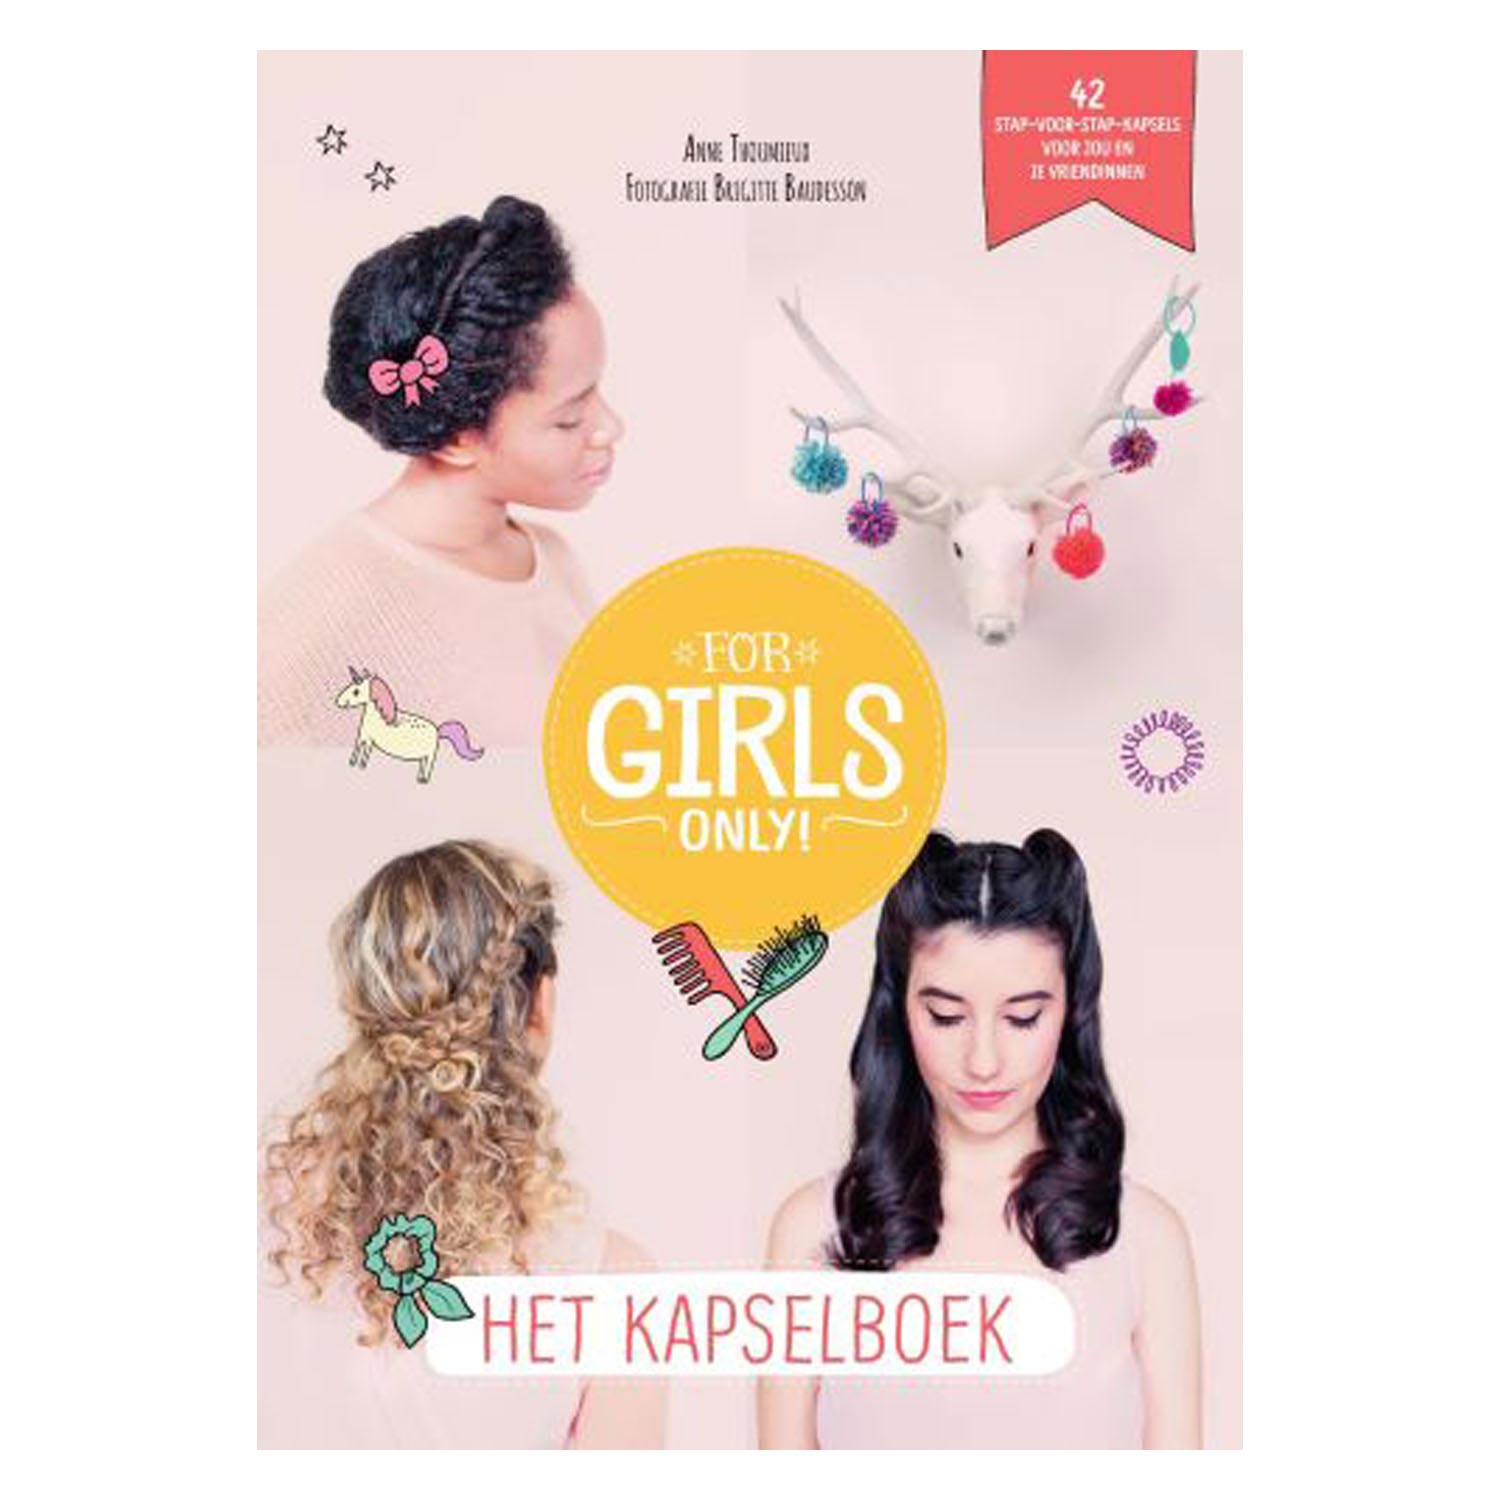 Het Kapselboek (For Girls Only!)